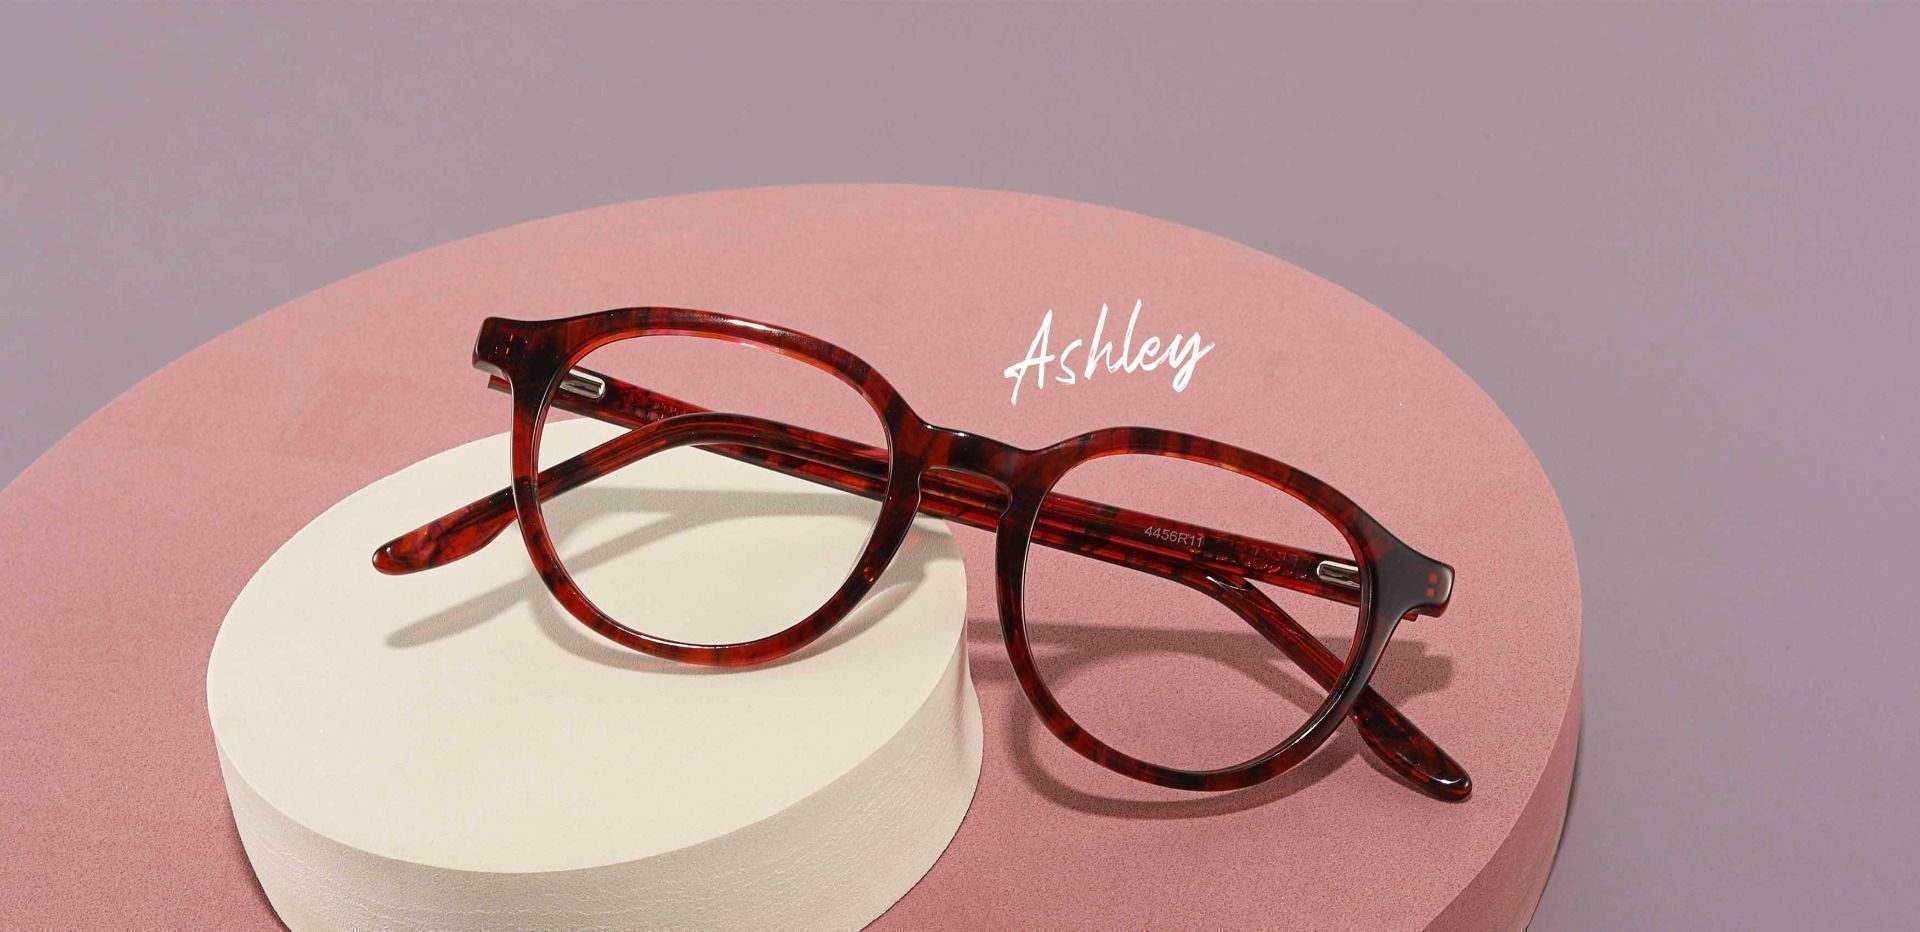 Ashley Oval Prescription Glasses - Red